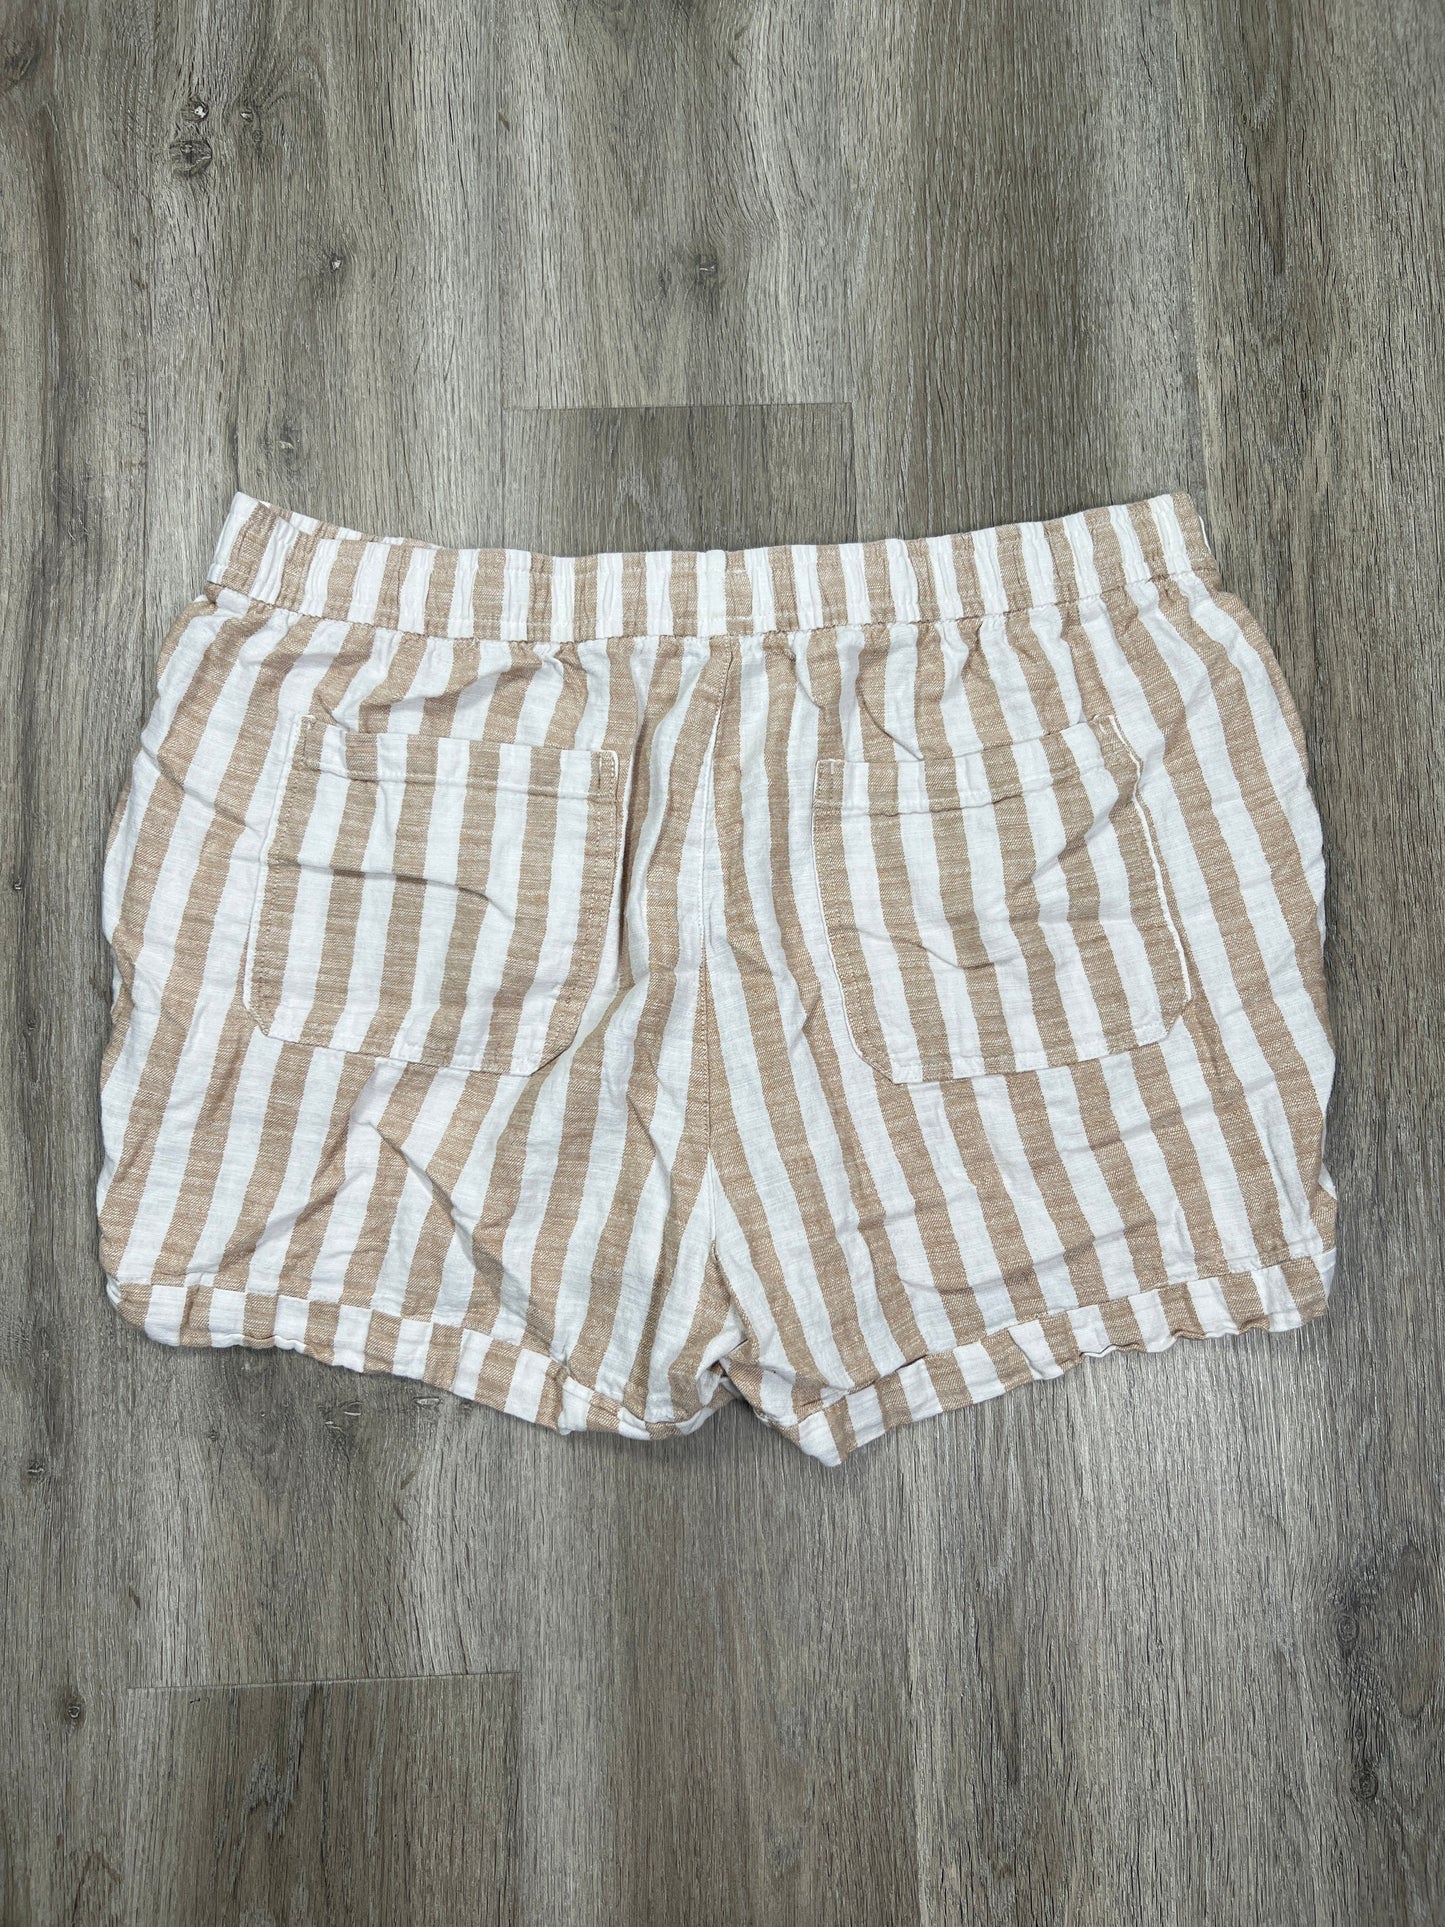 Striped Pattern Shorts Old Navy, Size Xl